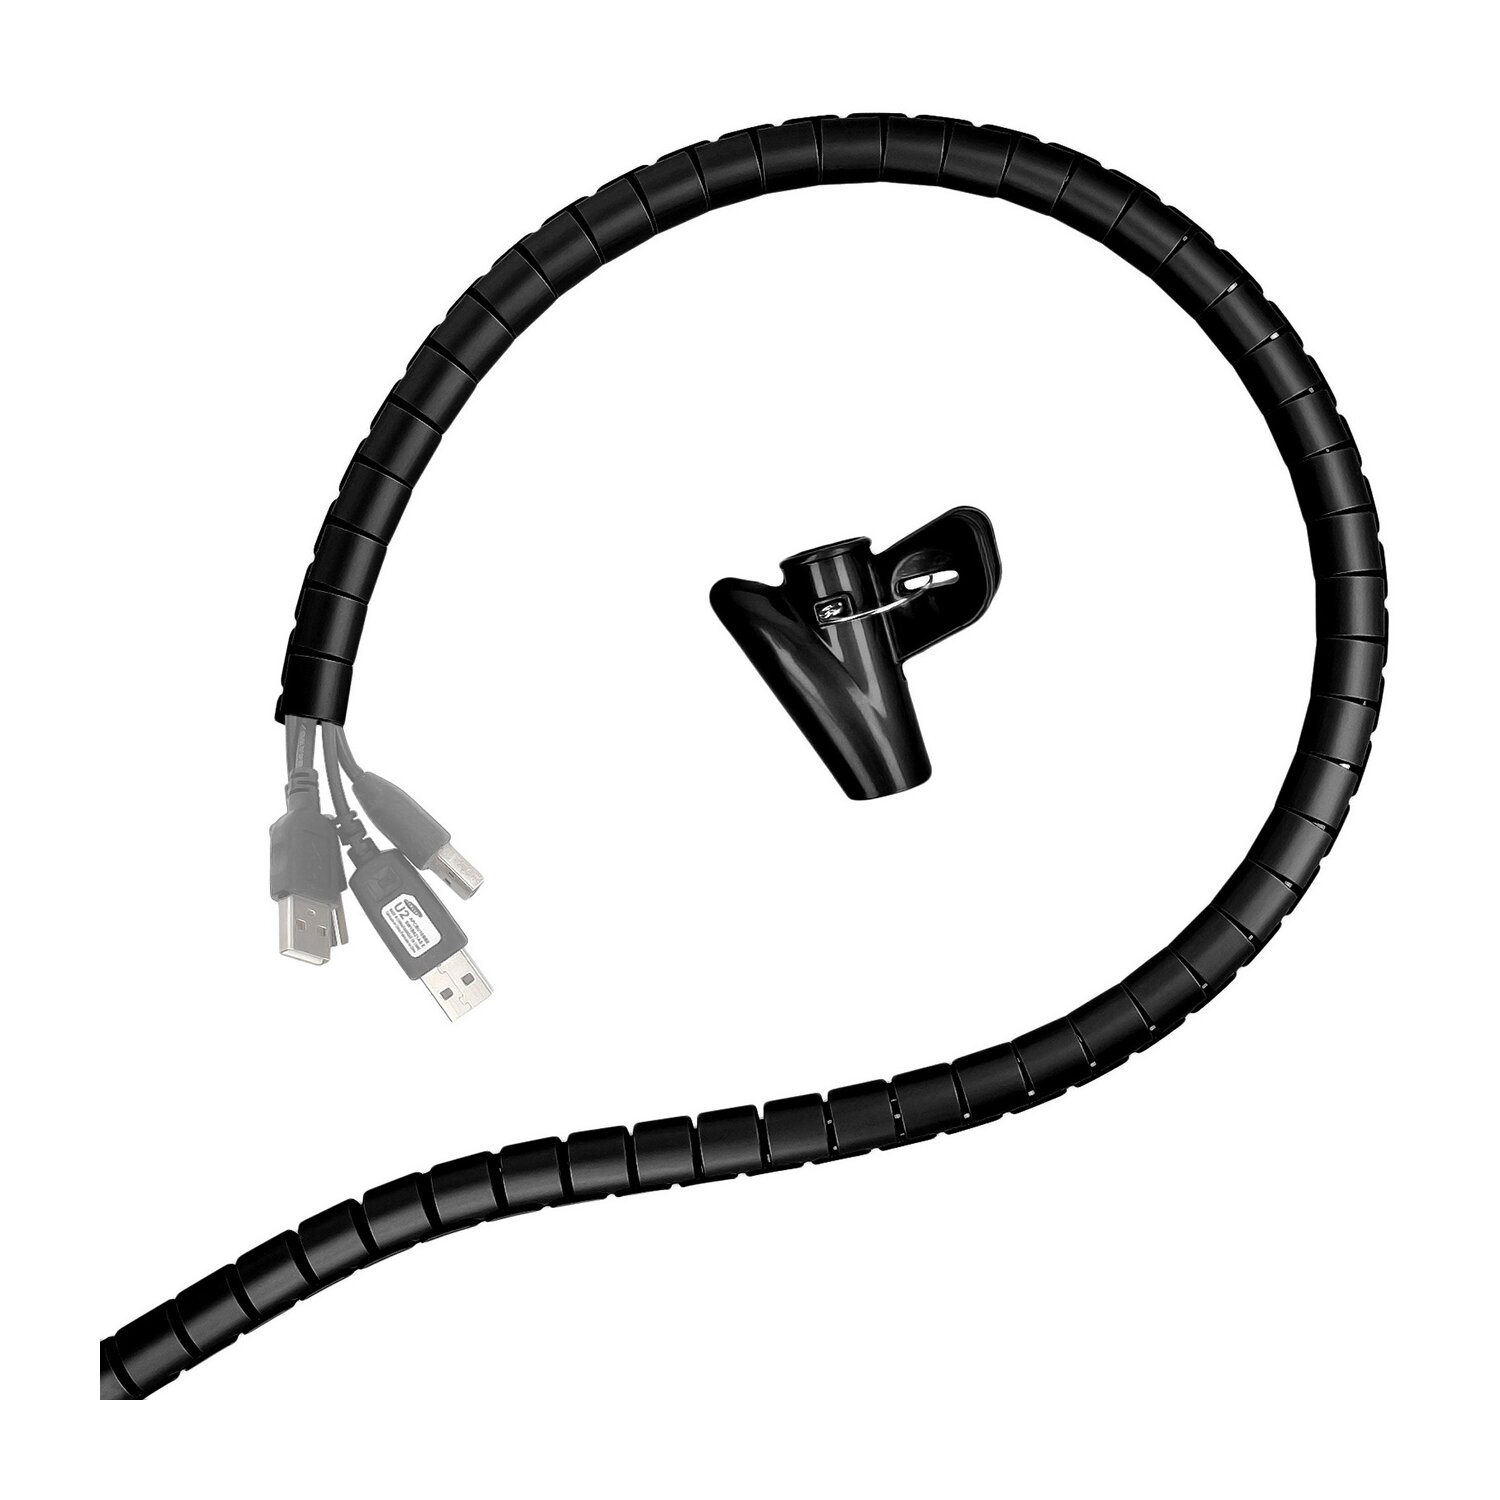 Minadax professioneller HighTech Kabelschlauch Kabelkanal in schwarz mit 15 mm Durchmesser f&uuml;r flexibles Kabelmanagement an Computer und Arbeitsplatz